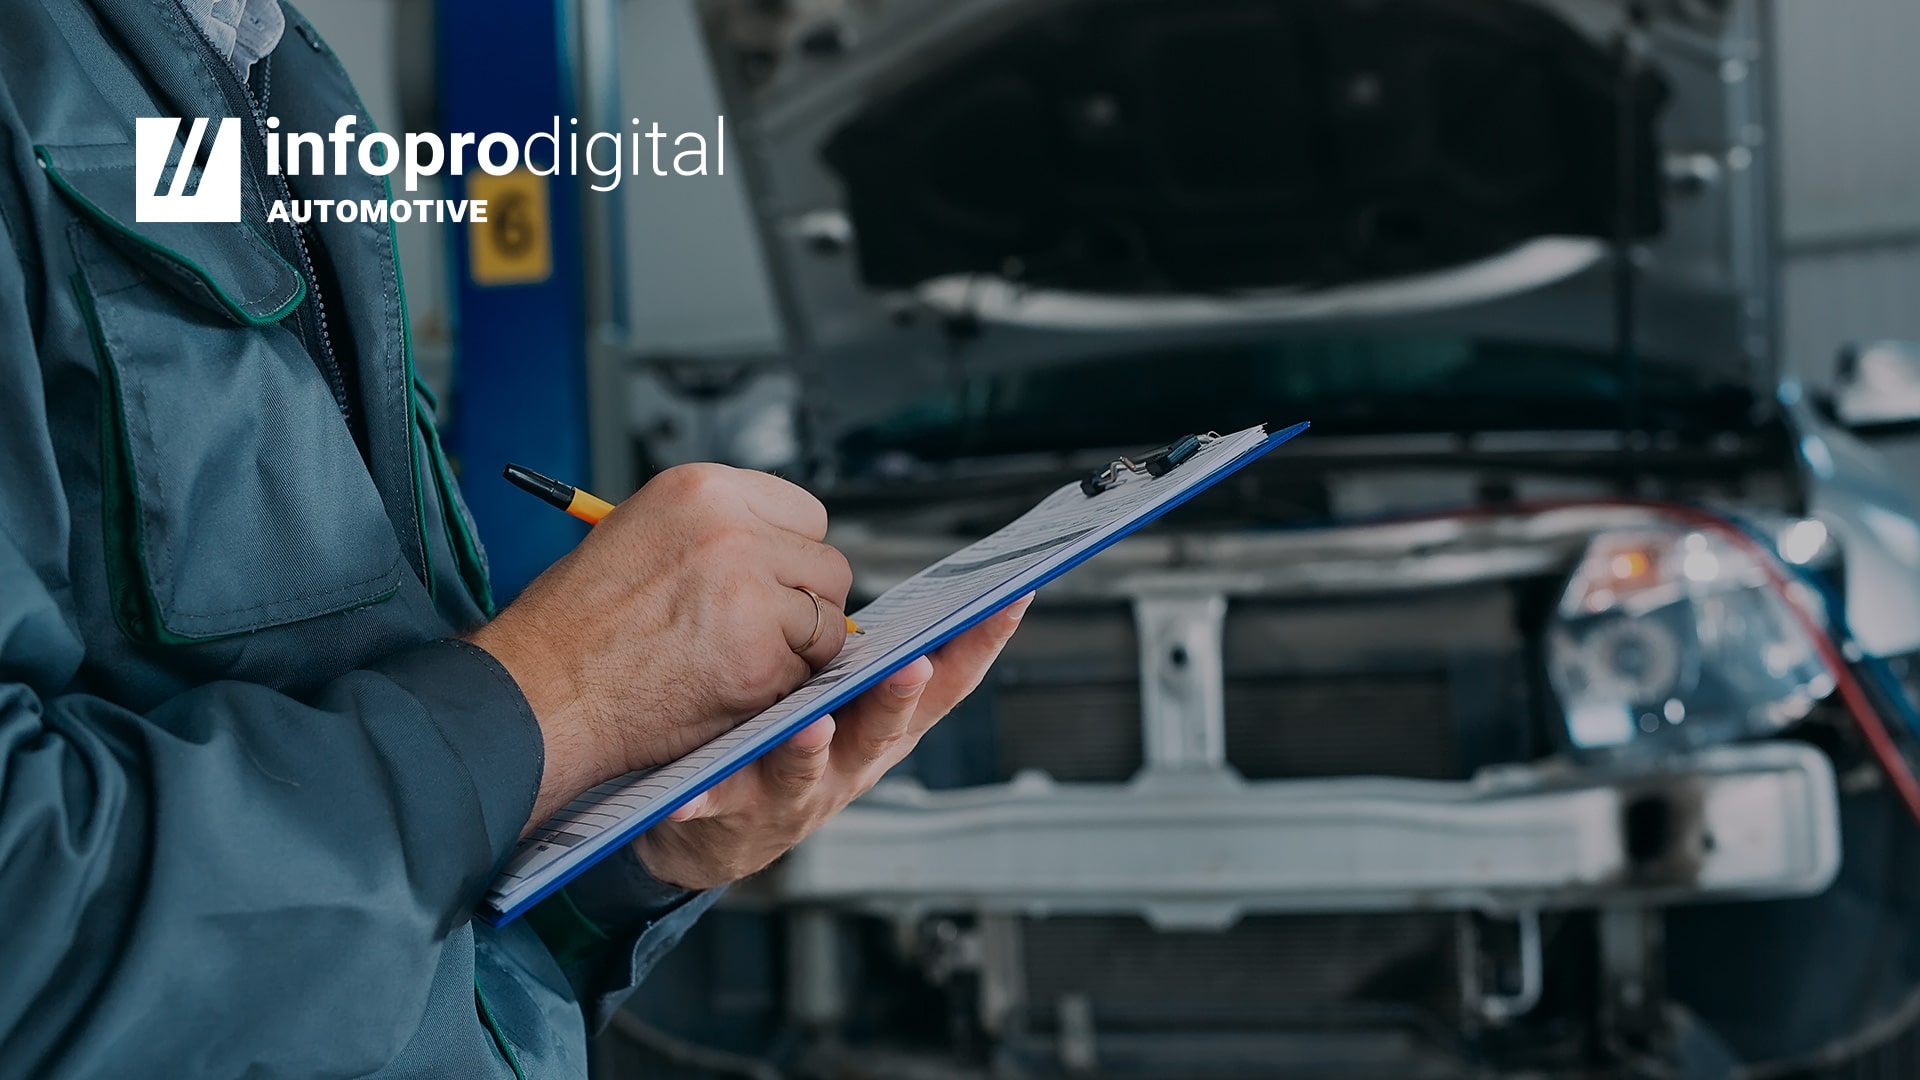 Mantenimiento preventivo para talleres: descarga la ficha de inspección de vehículos y fideliza a tus clientes